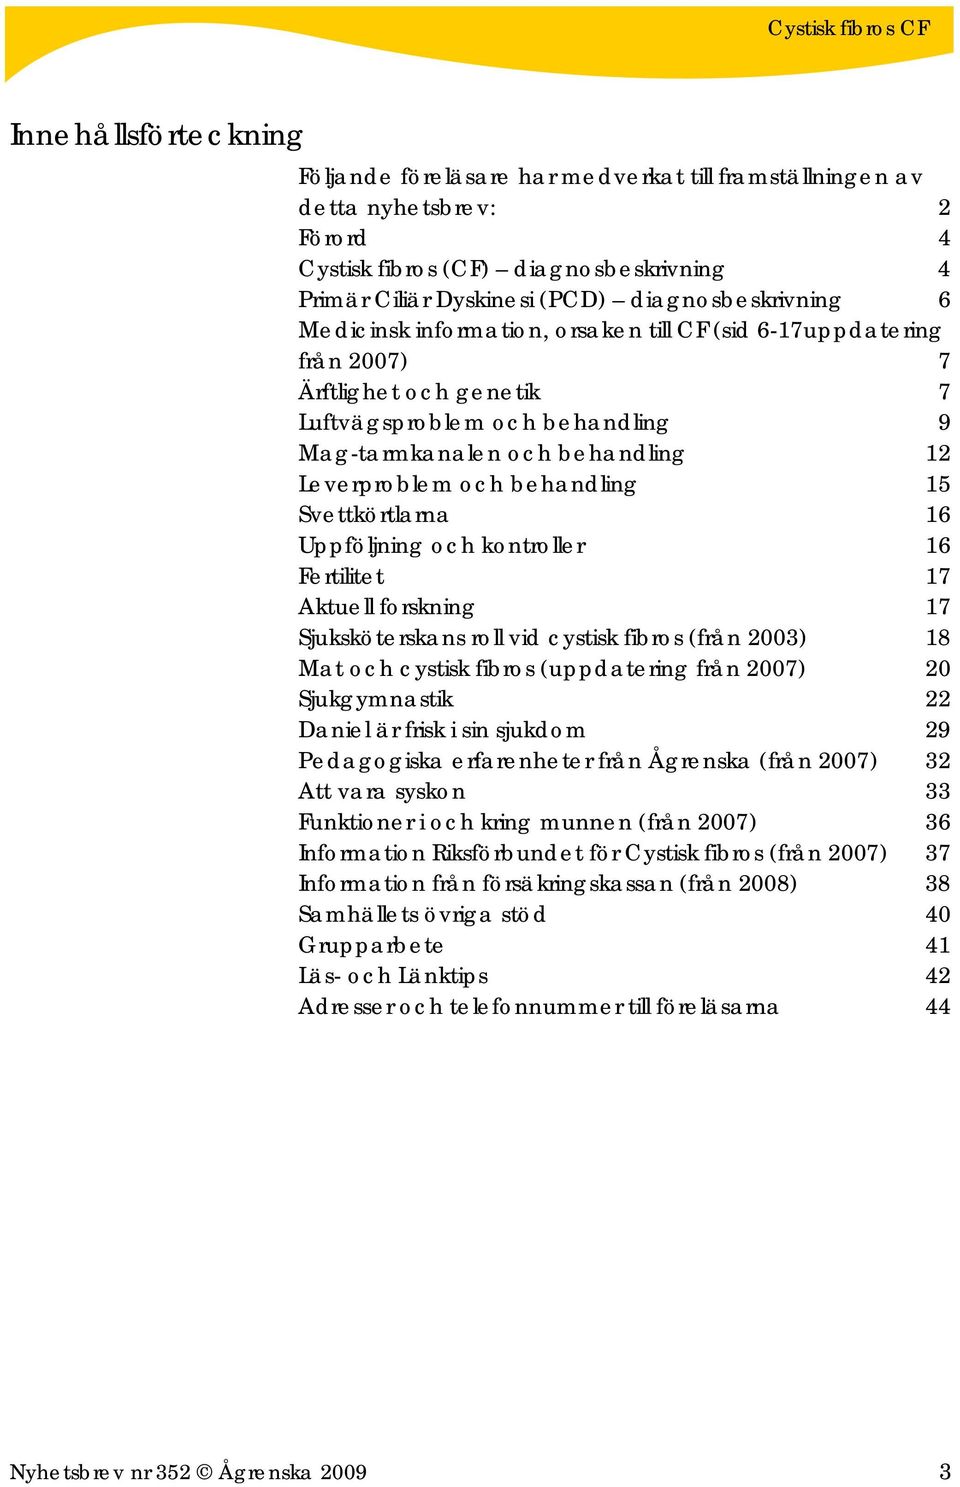 Svettkörtlarna 16 Uppföljning och kontroller 16 Fertilitet 17 Aktuell forskning 17 Sjuksköterskans roll vid cystisk fibros (från 2003) 18 Mat och cystisk fibros (uppdatering från 2007) 20